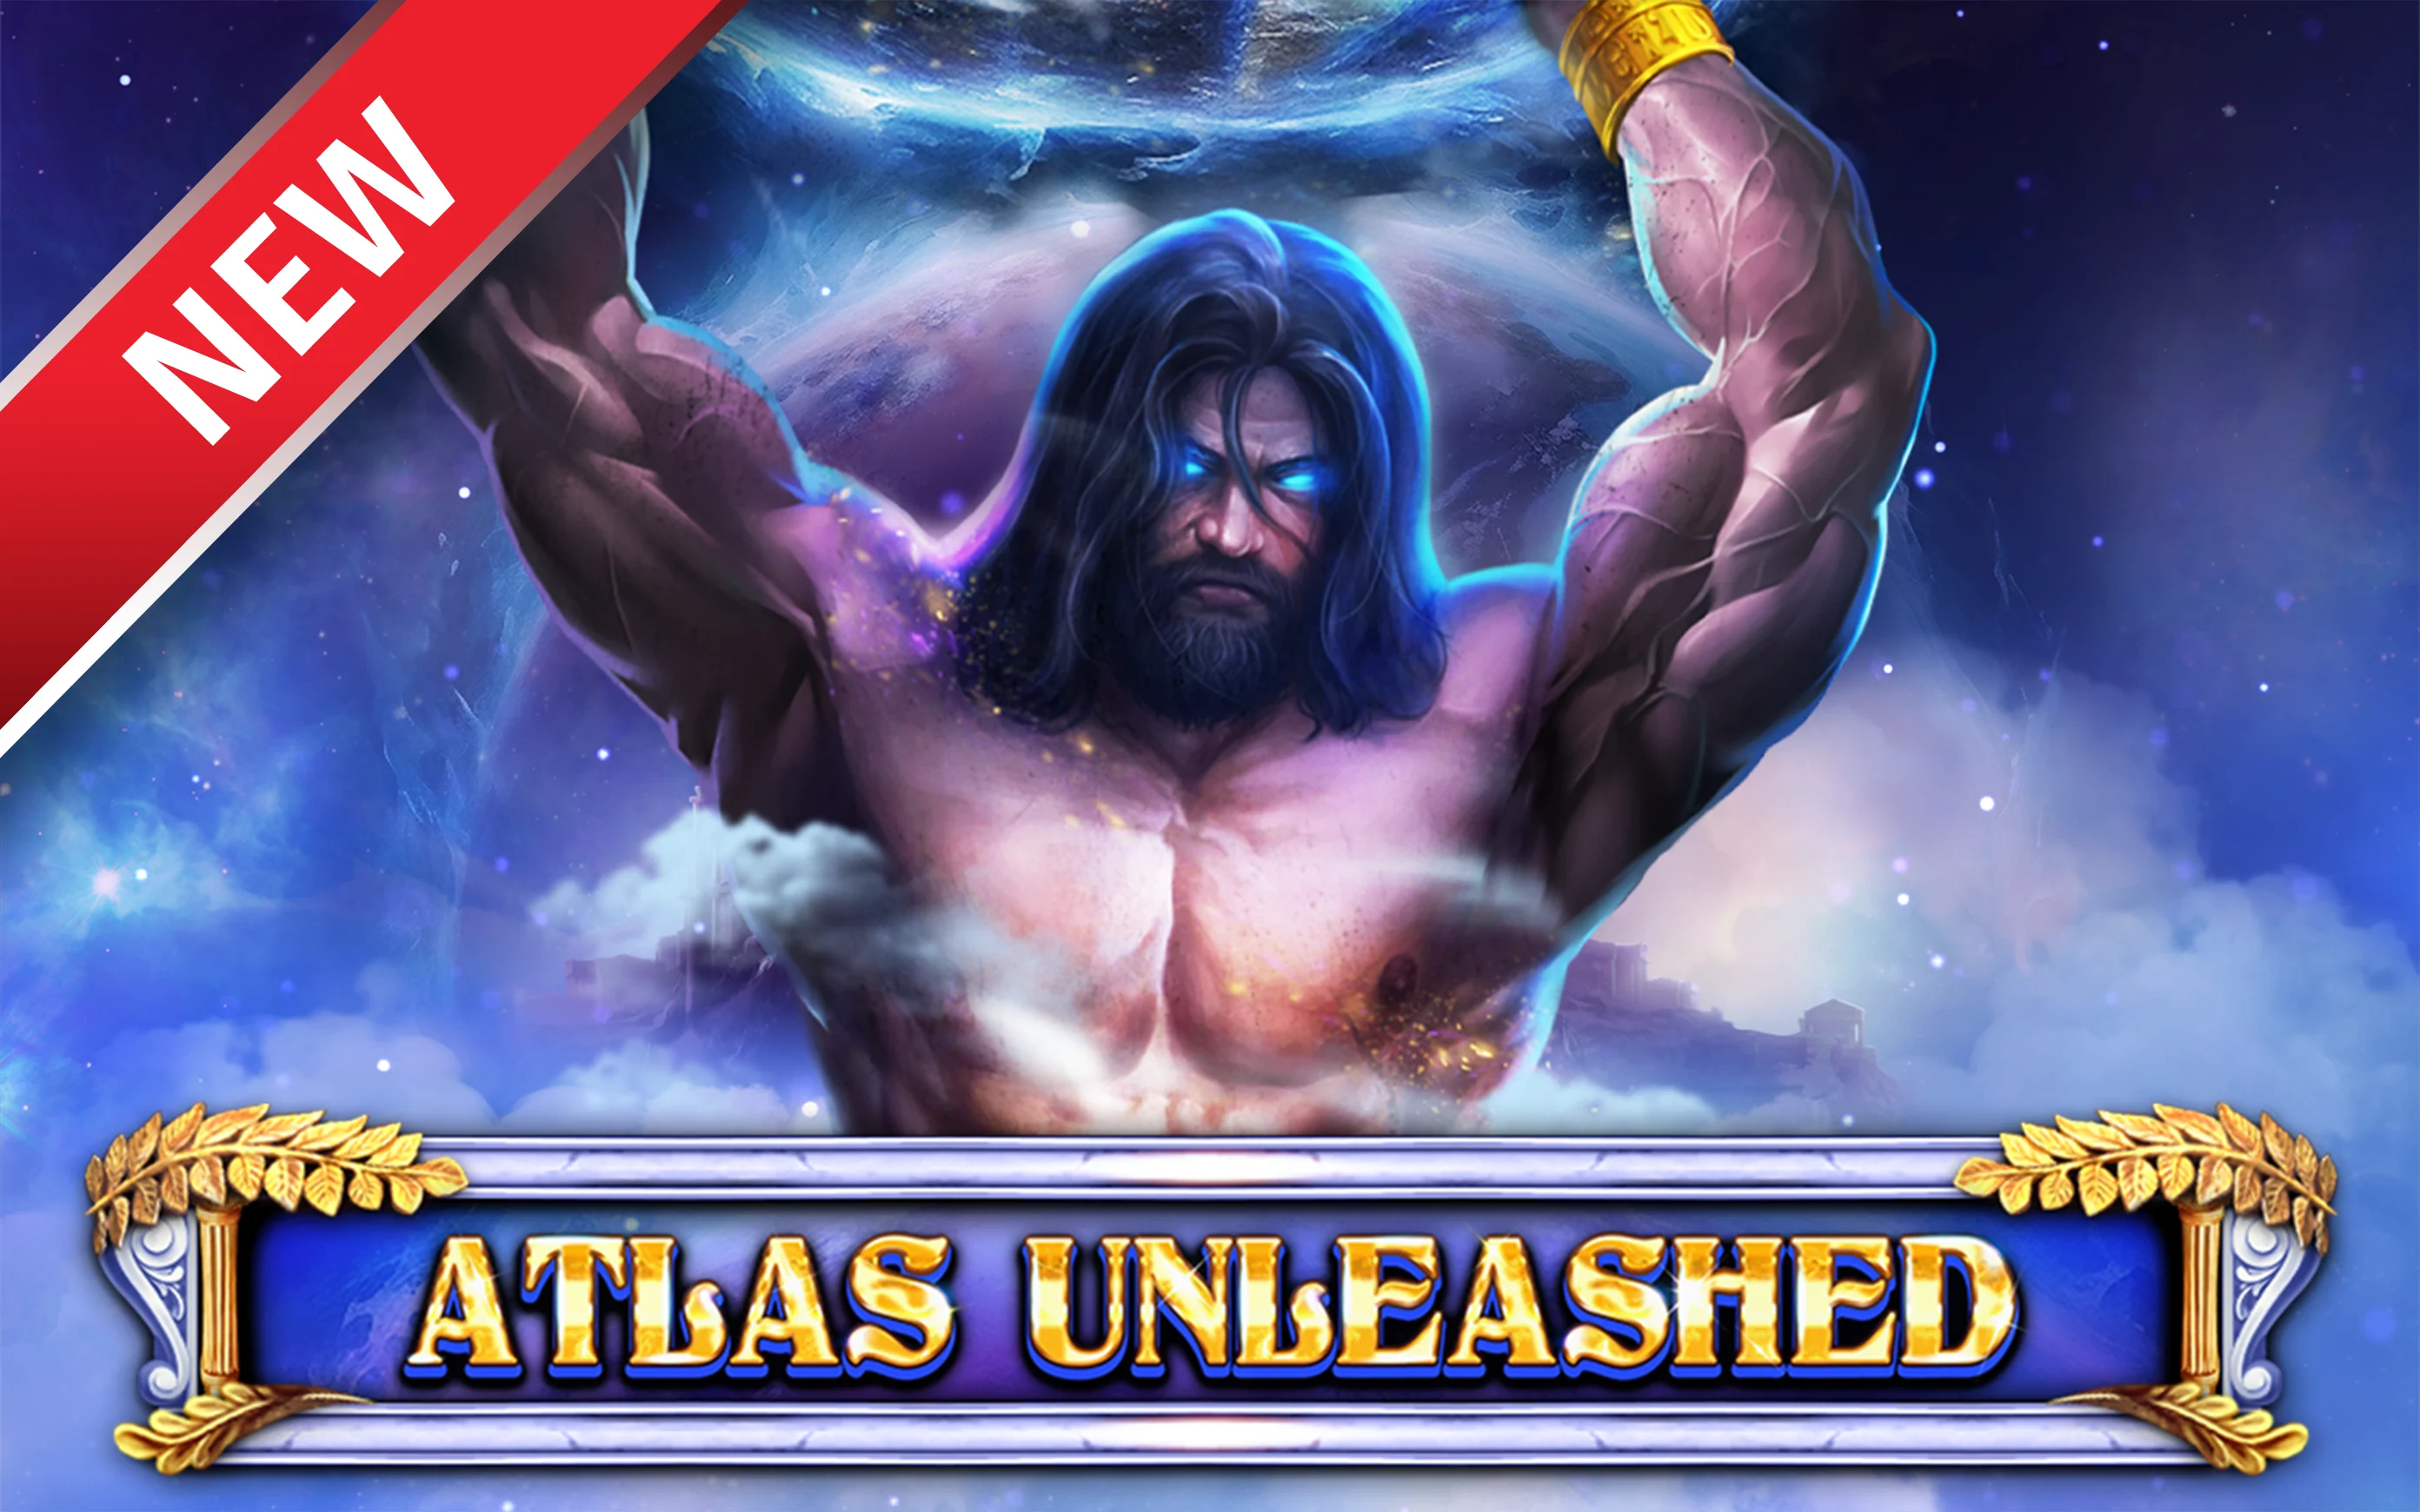 Spielen Sie Atlas Unleashed auf Starcasino.be-Online-Casino